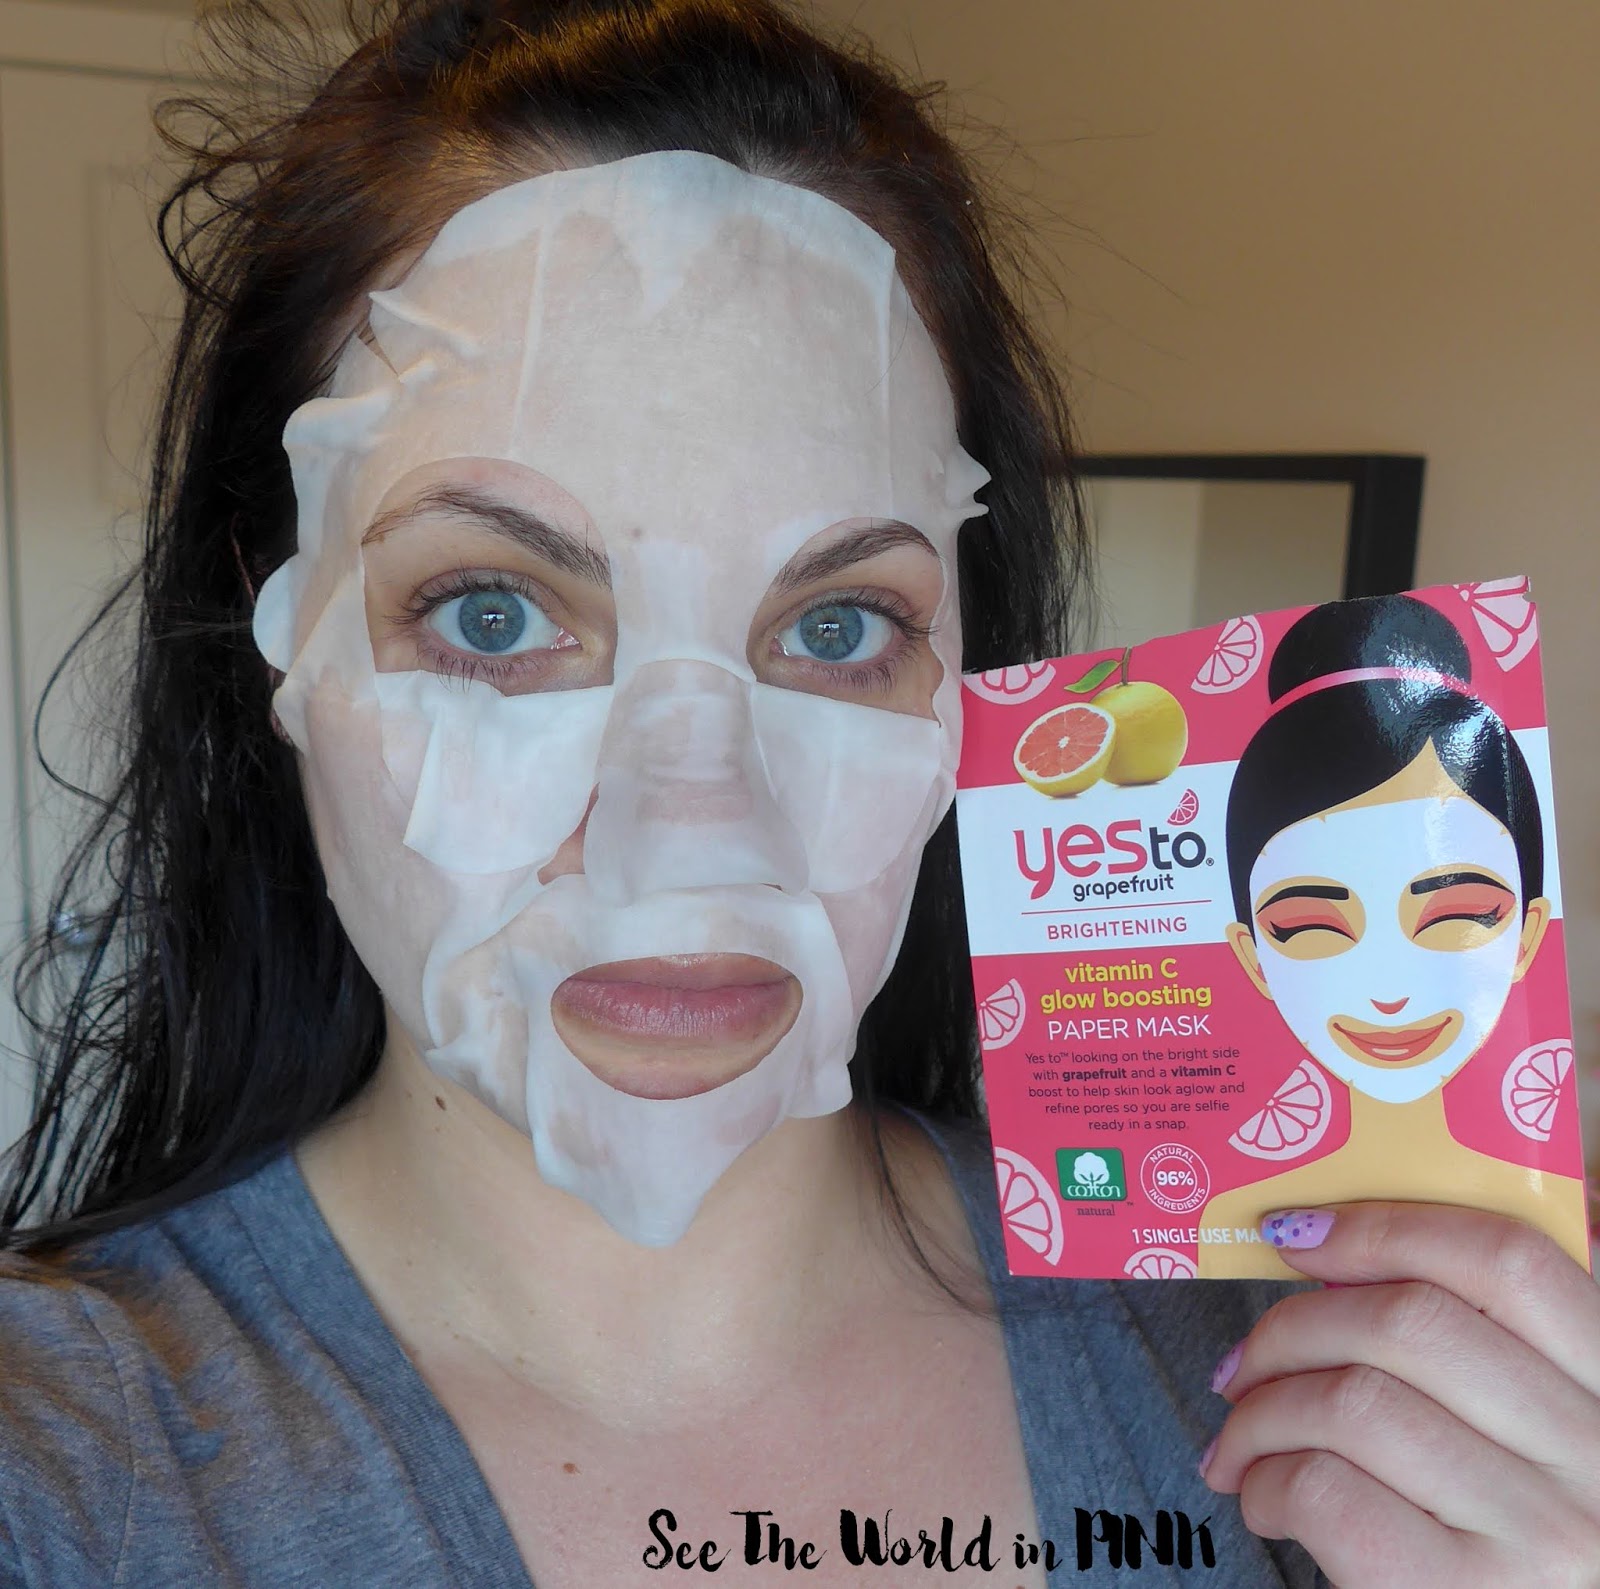 Skincare Sunday - Yes To Grapefruit & Tomato Paper Masks 